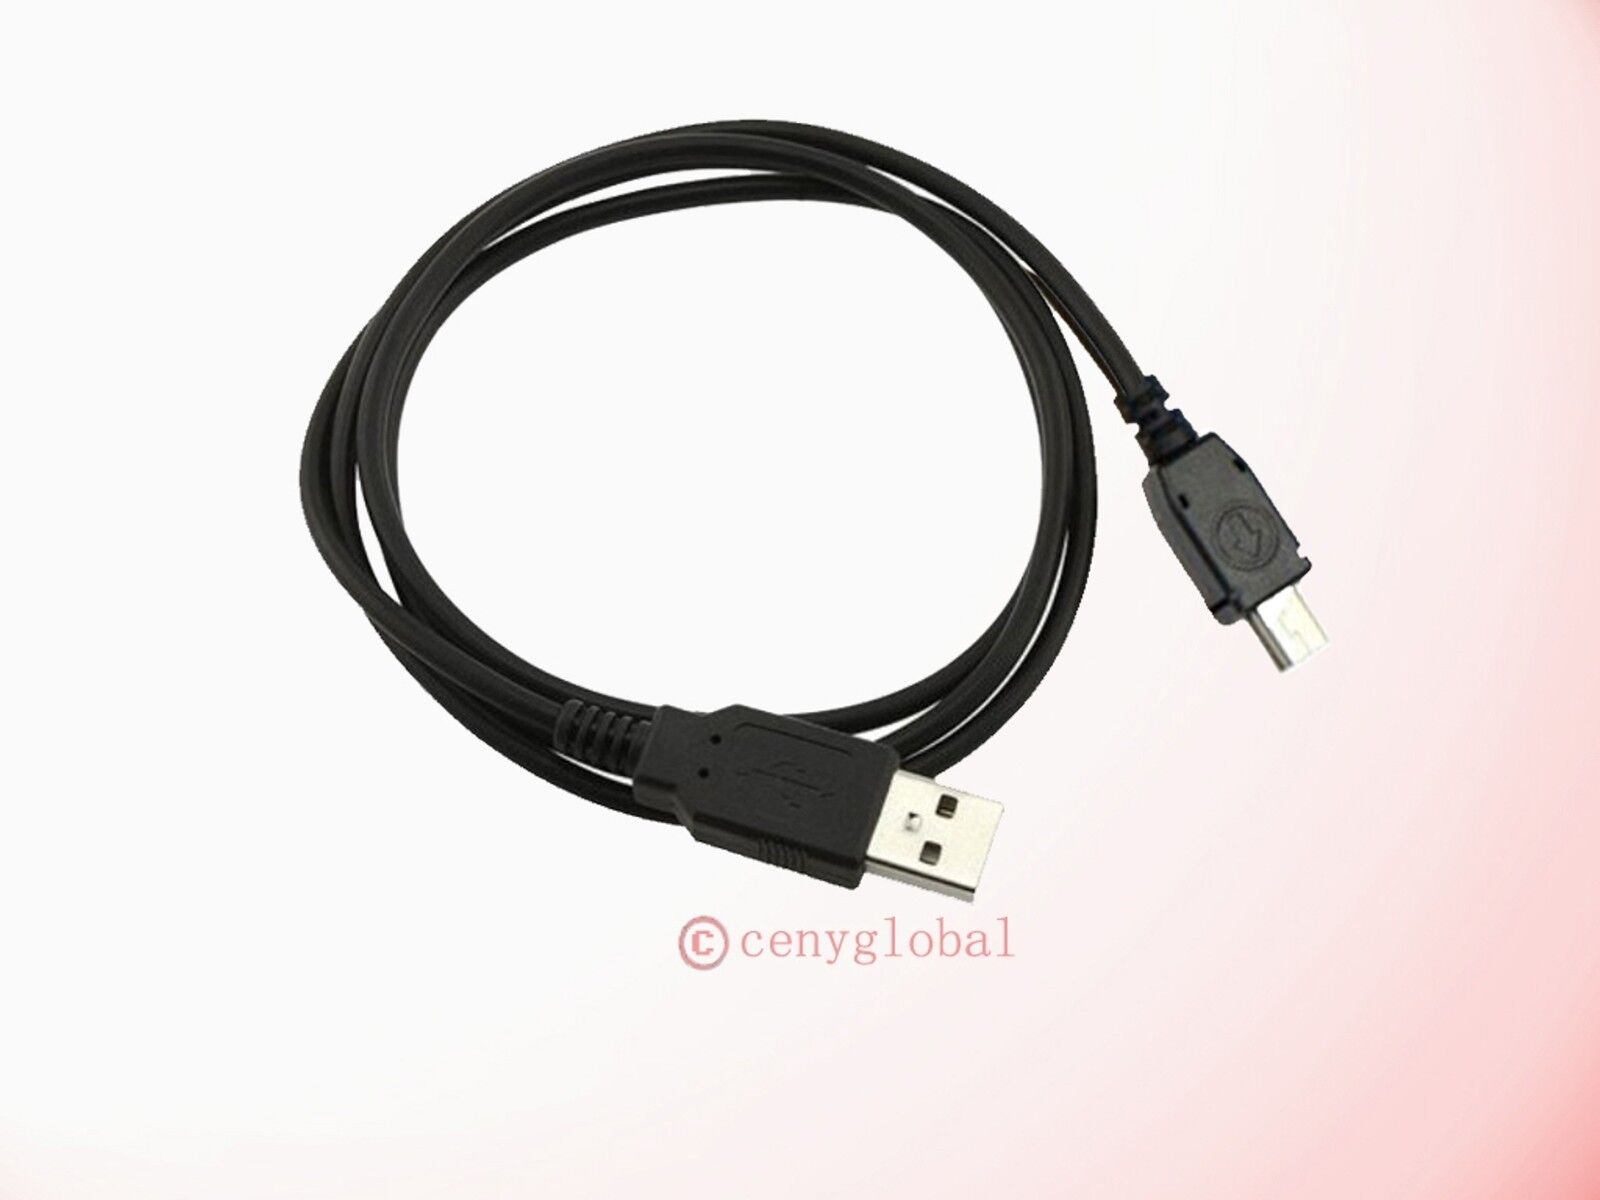 Folkeskole komme til syne rådgive USB Data/Charger Cable Cord For Sandisk Sansa Clip Zip MP3 Player SDMX22  SDMX22R | eBay